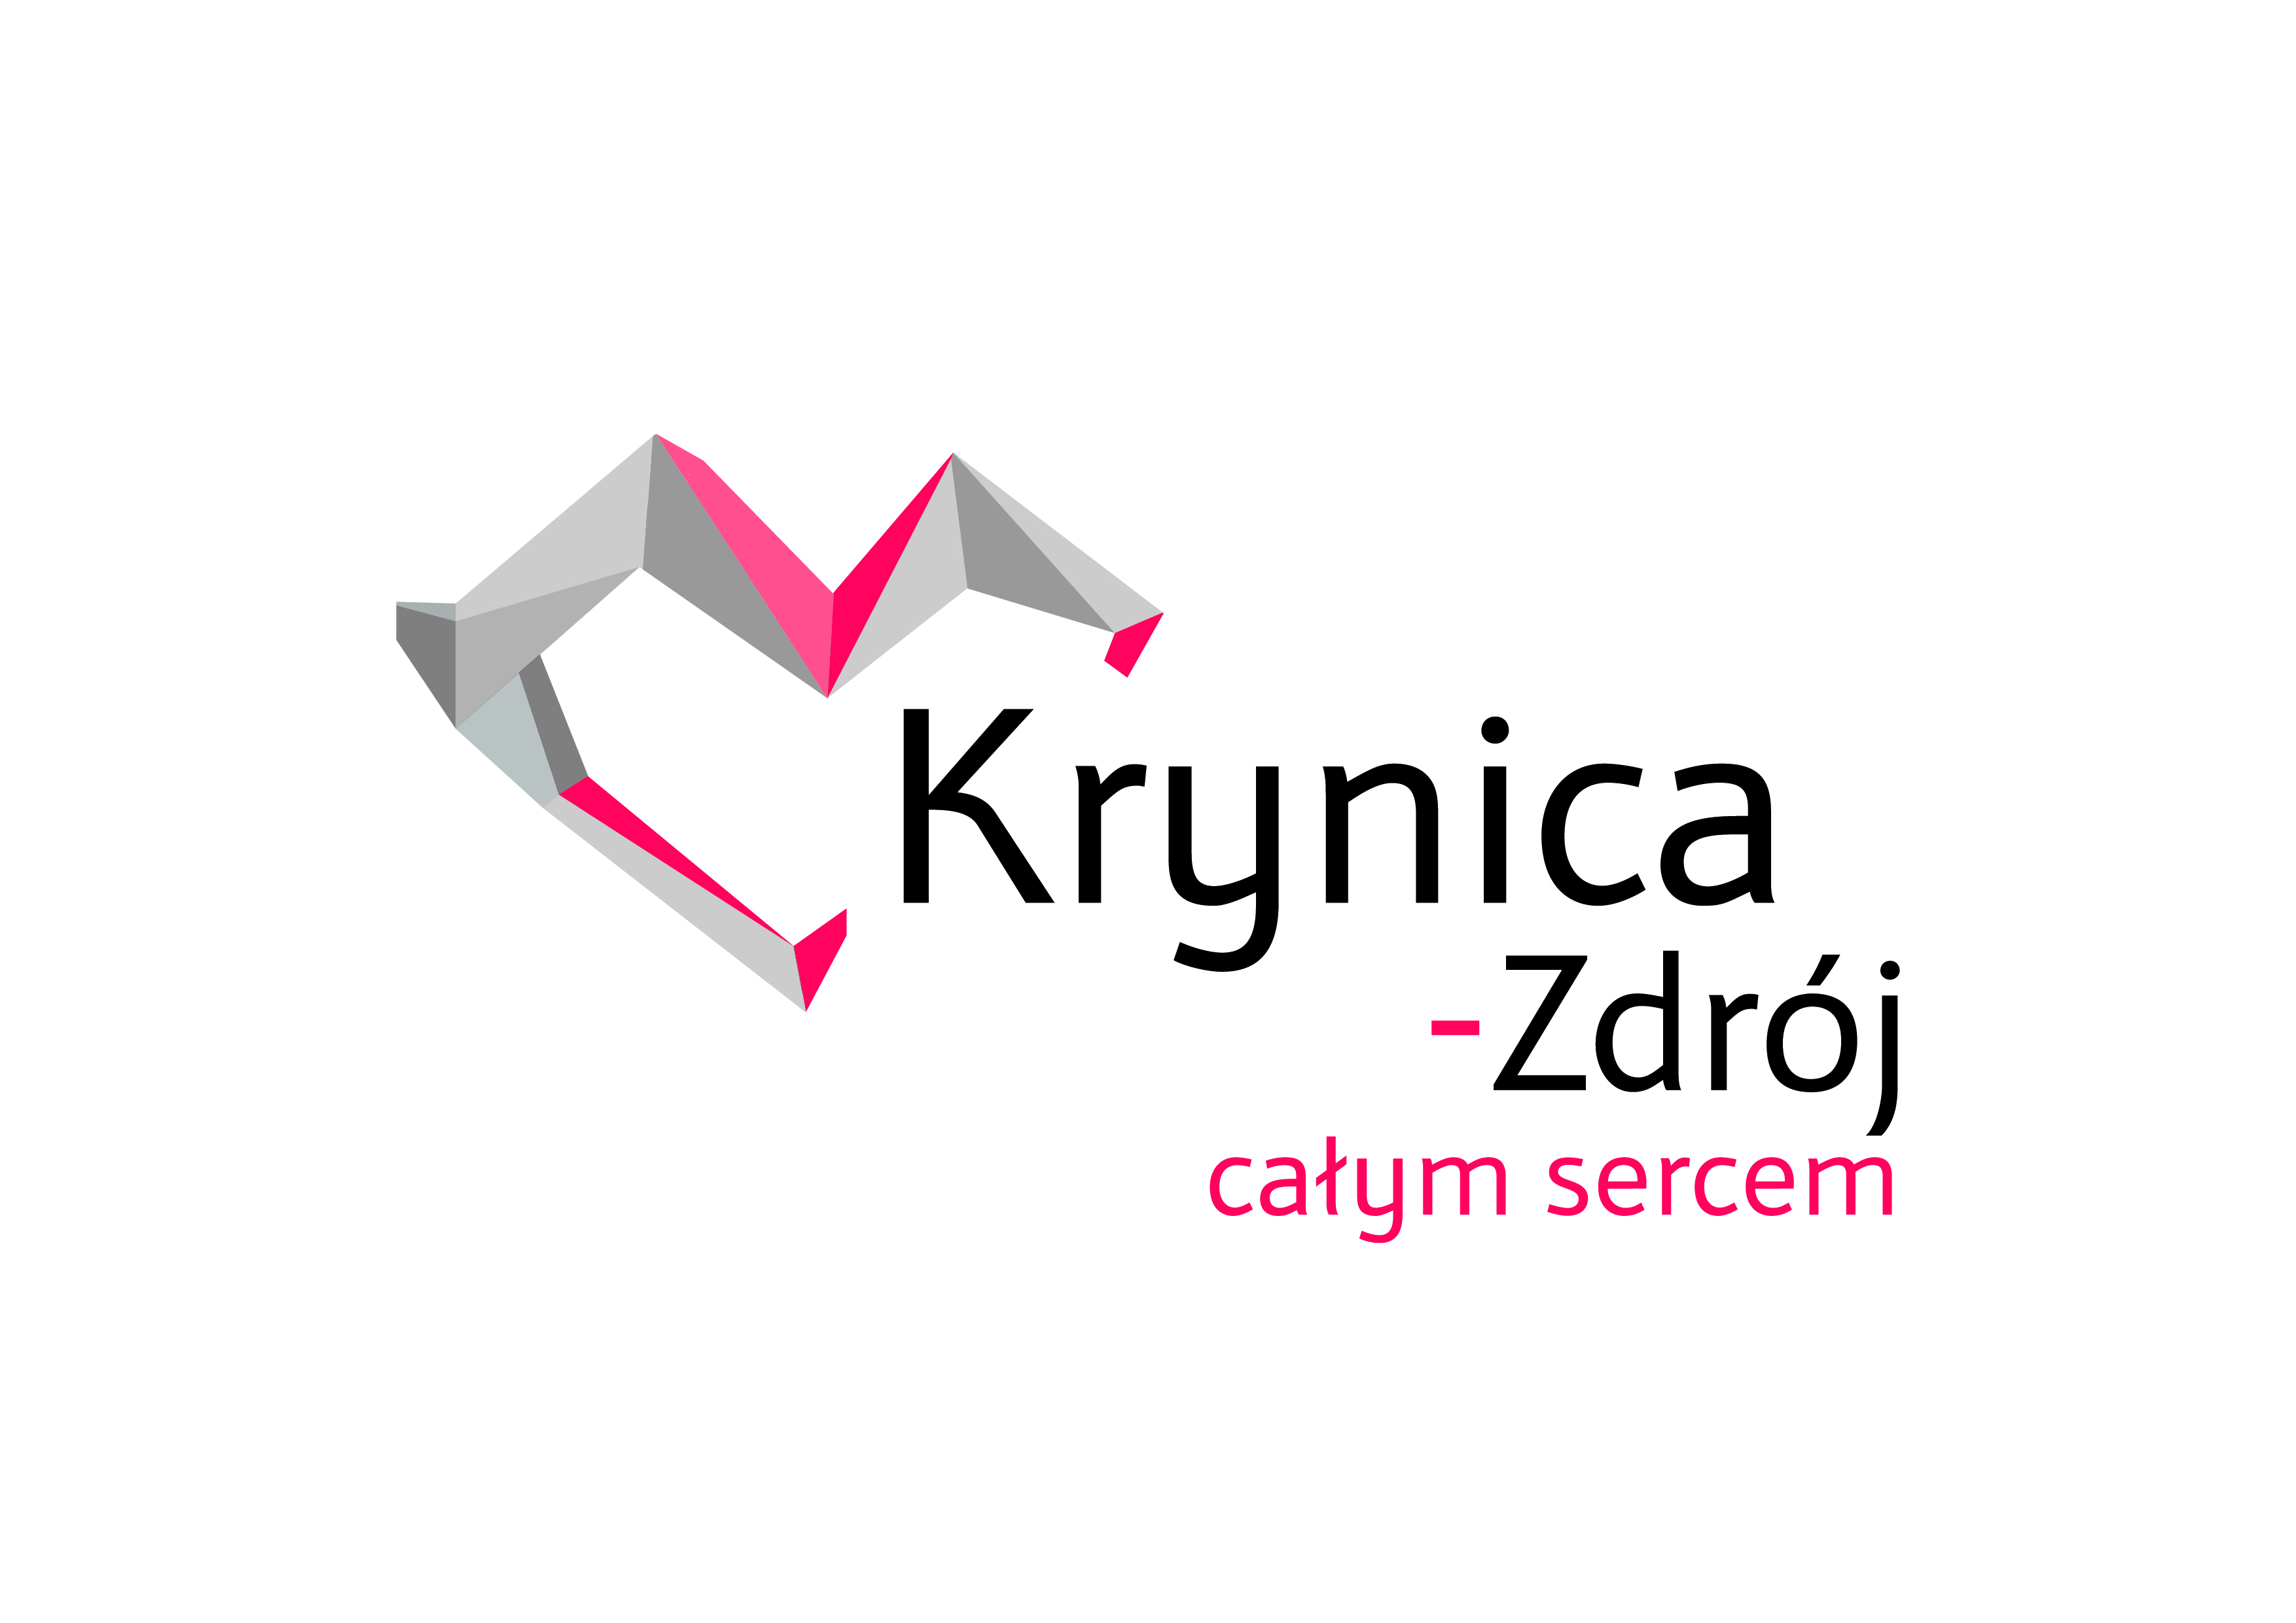 Obrazek przedstawia logotyp Krynicy-Zdroju w kształcie serca oraz tekstem Krynica-Zdrój całym sercem